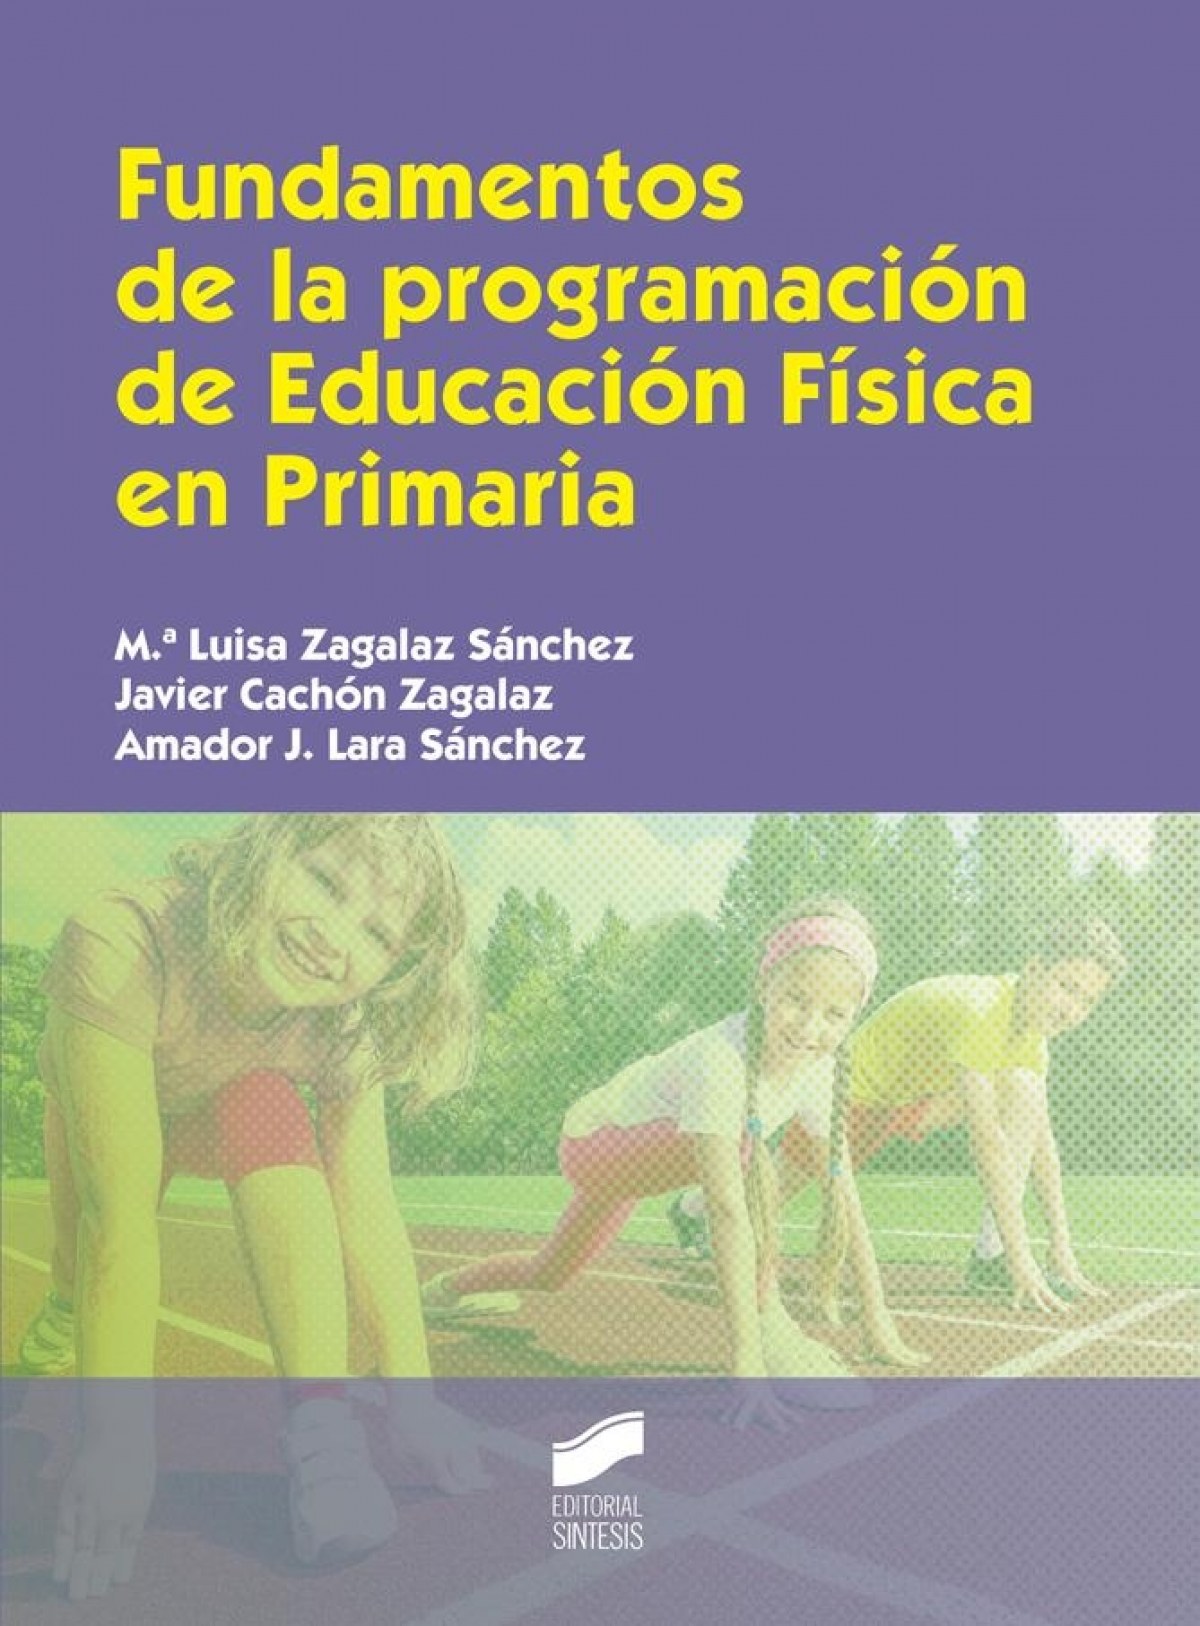 FUNDAMENTOS DE LA PROGRAMACION EDUCACION FISICA EN PRIMARIA